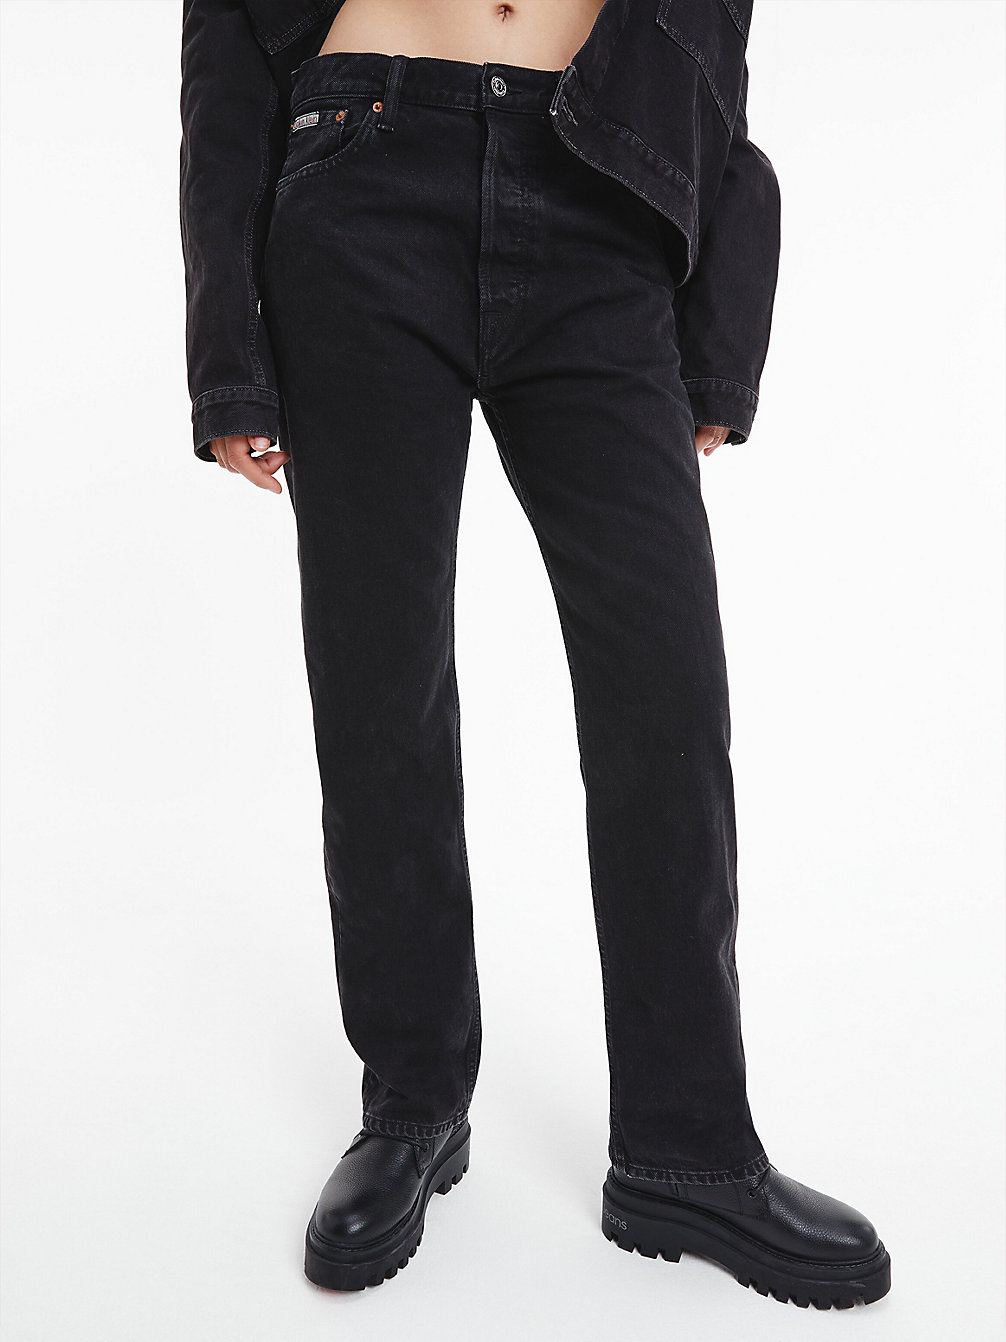 DENIM BLACK Unisex Straight Jeans - CK Standards undefined unisex Calvin Klein